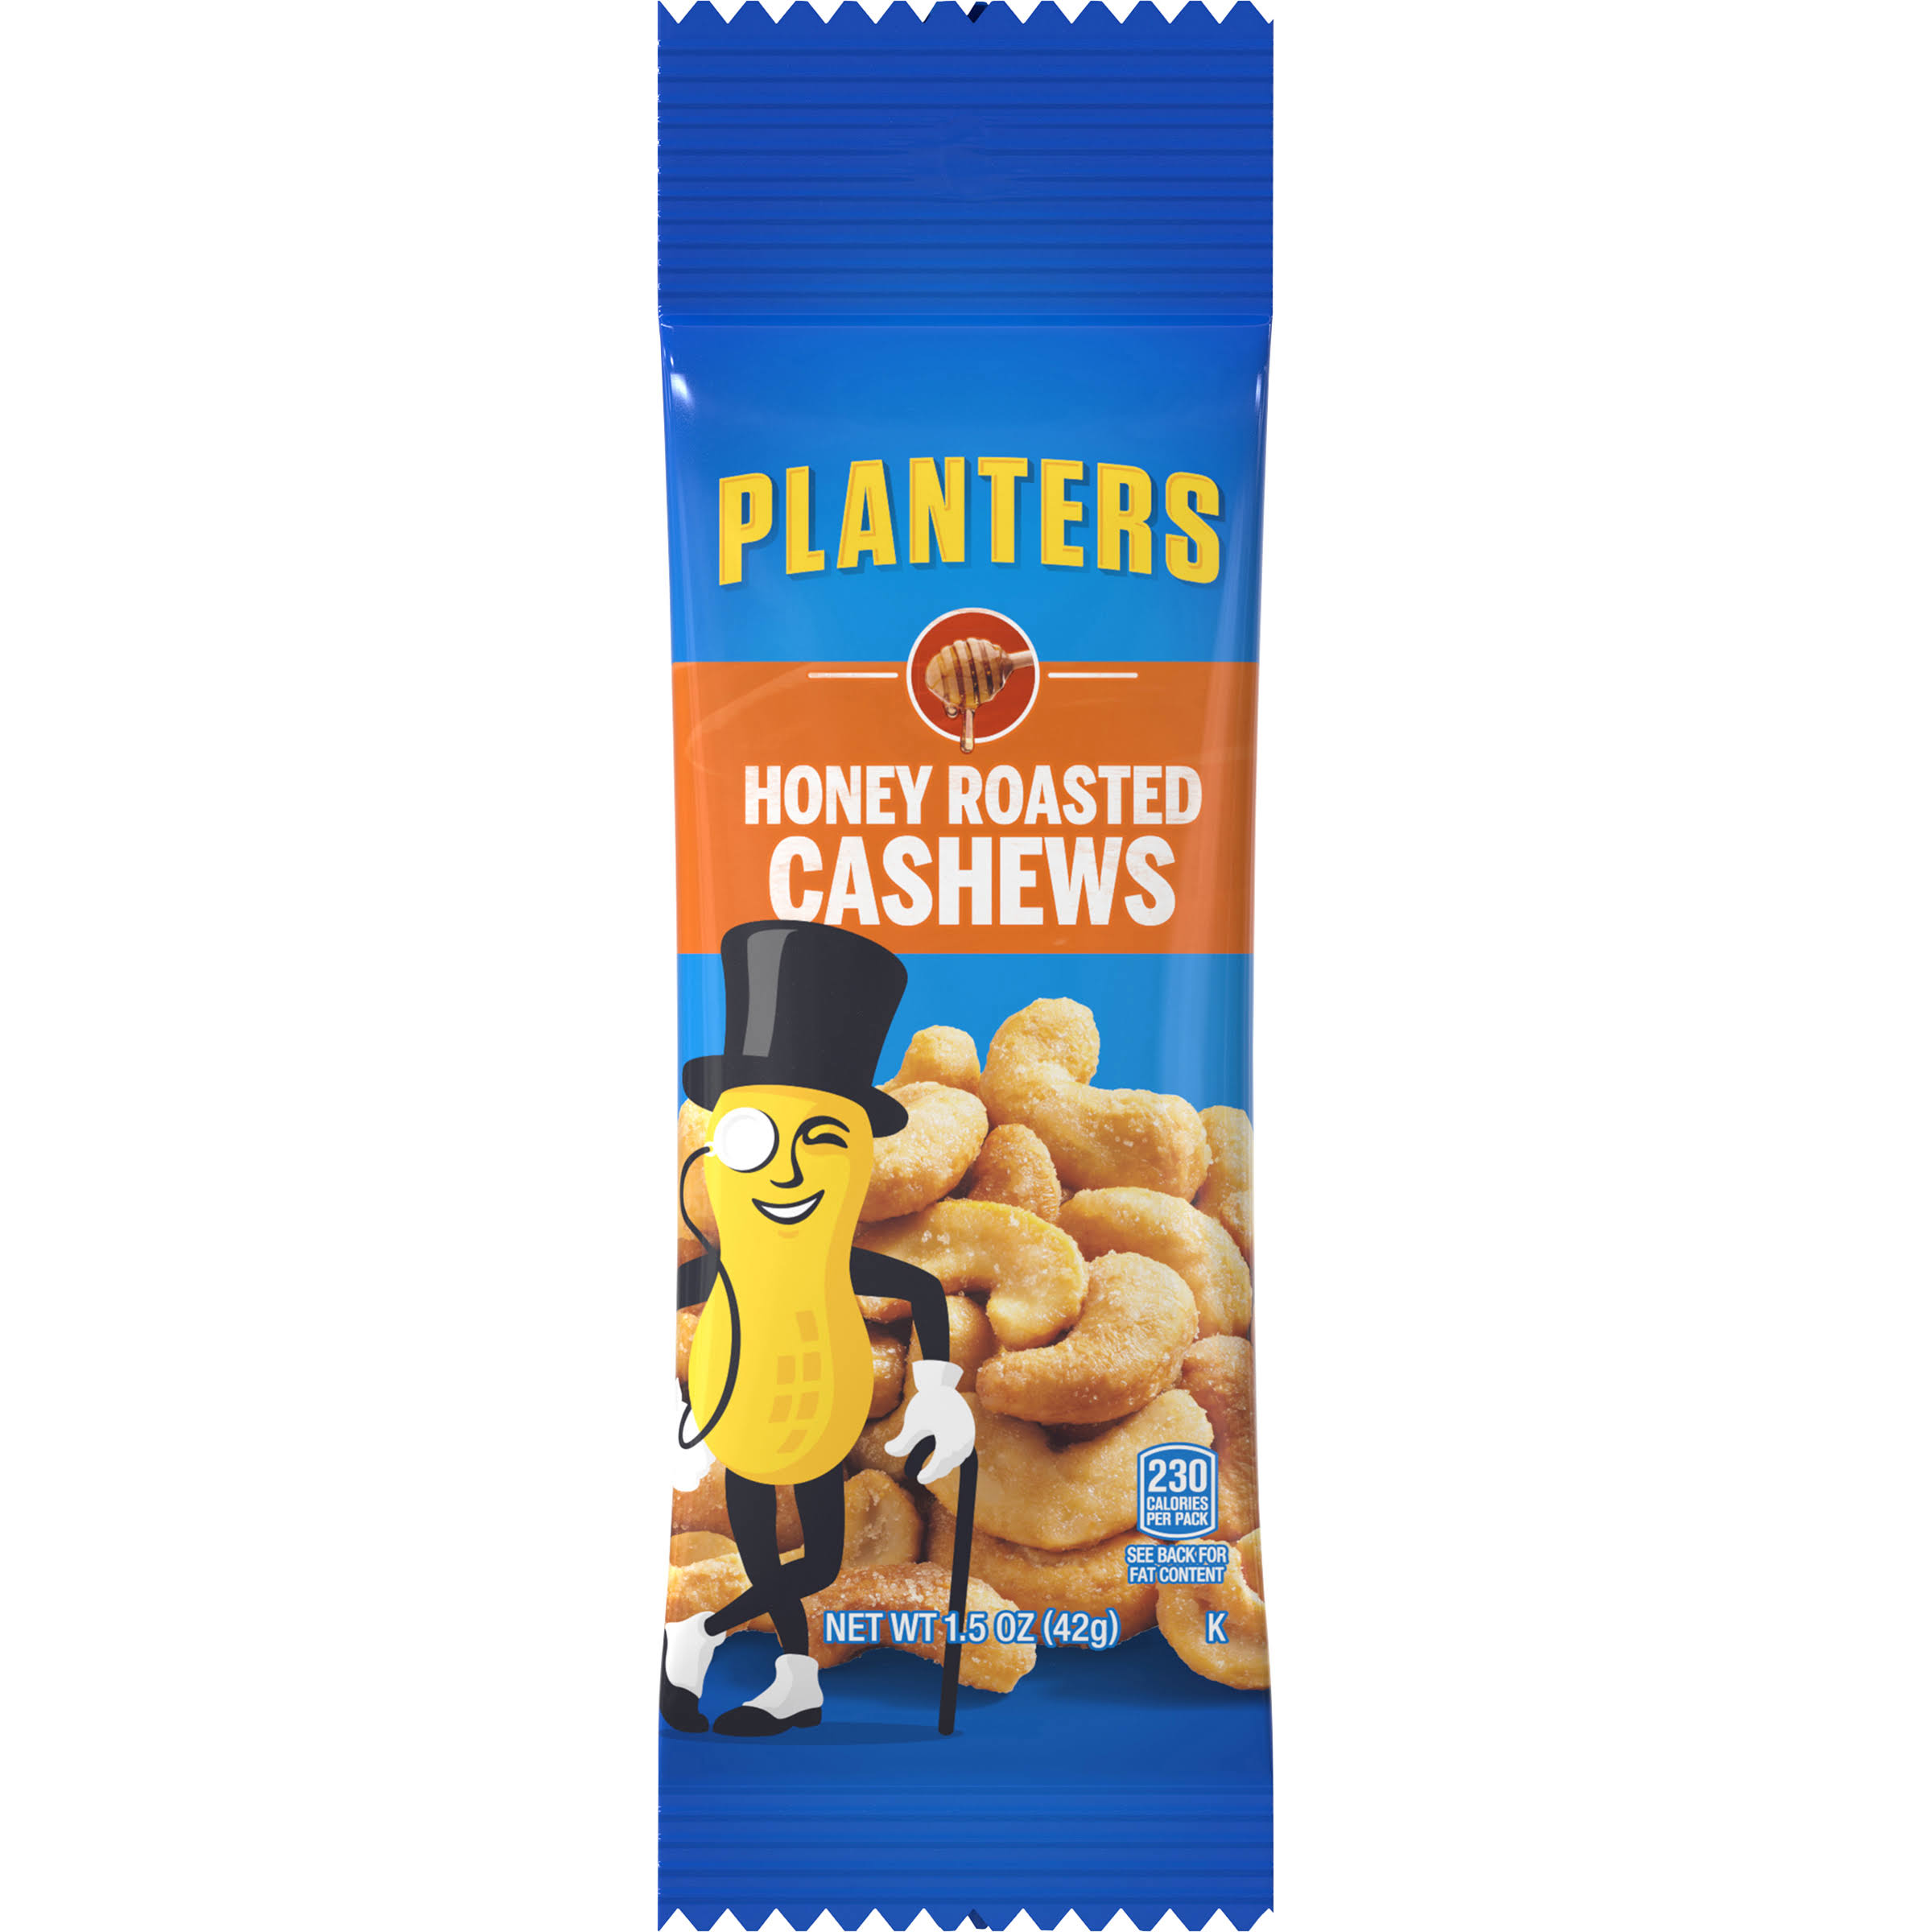 Planters Cashews, Honey Roasted - 1.5 oz